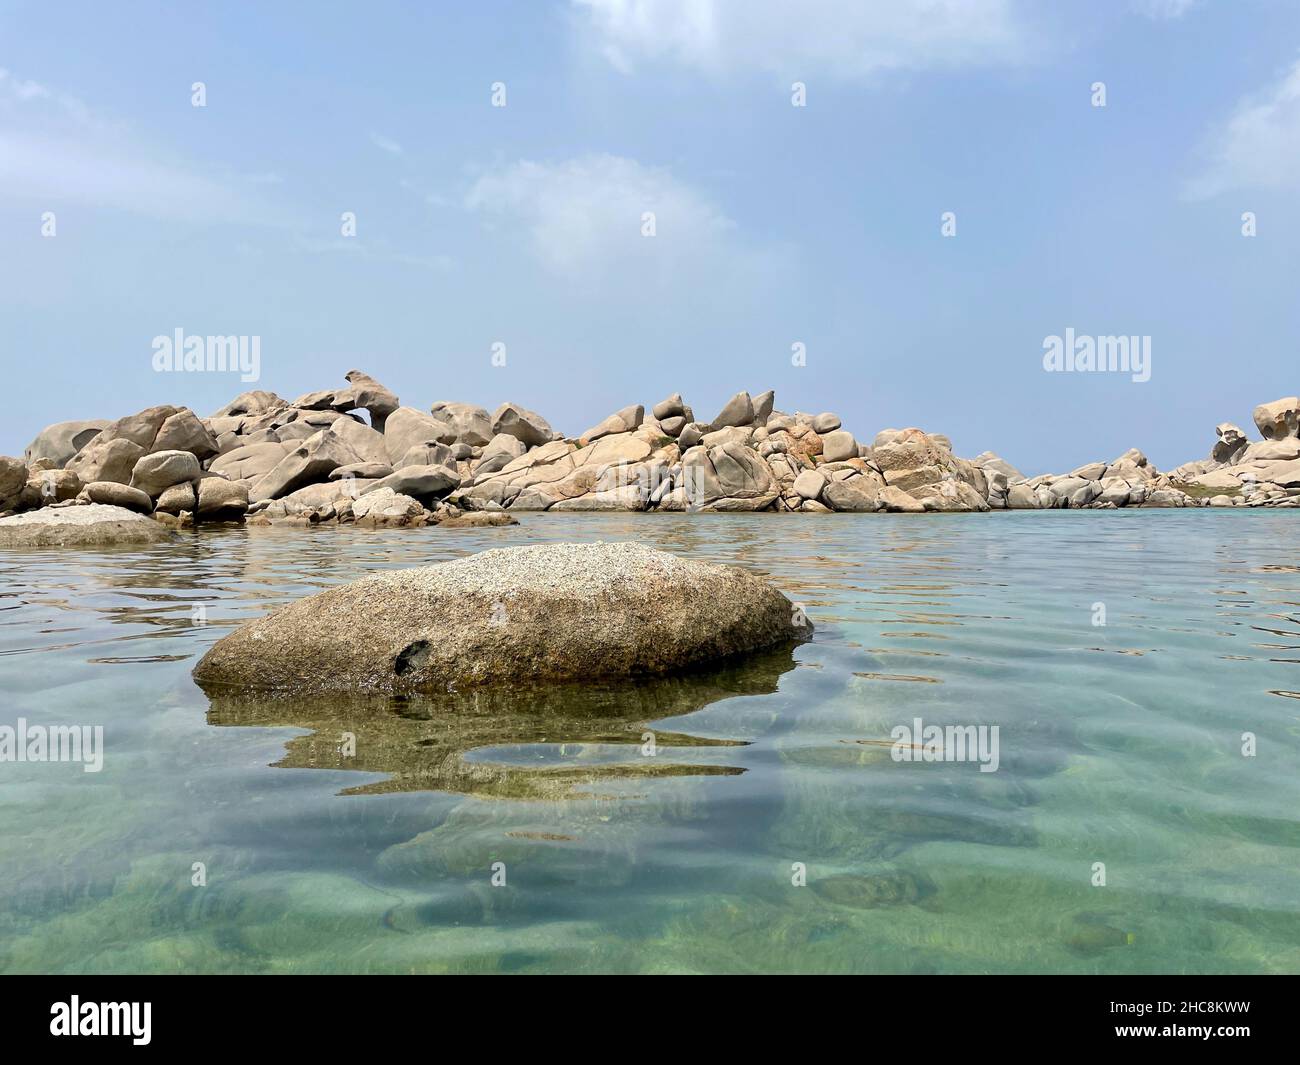 Eaux cristallines et formations rocheuses bizarres sur l'île de Lavezzi, réserve marine en Corse, France. Banque D'Images